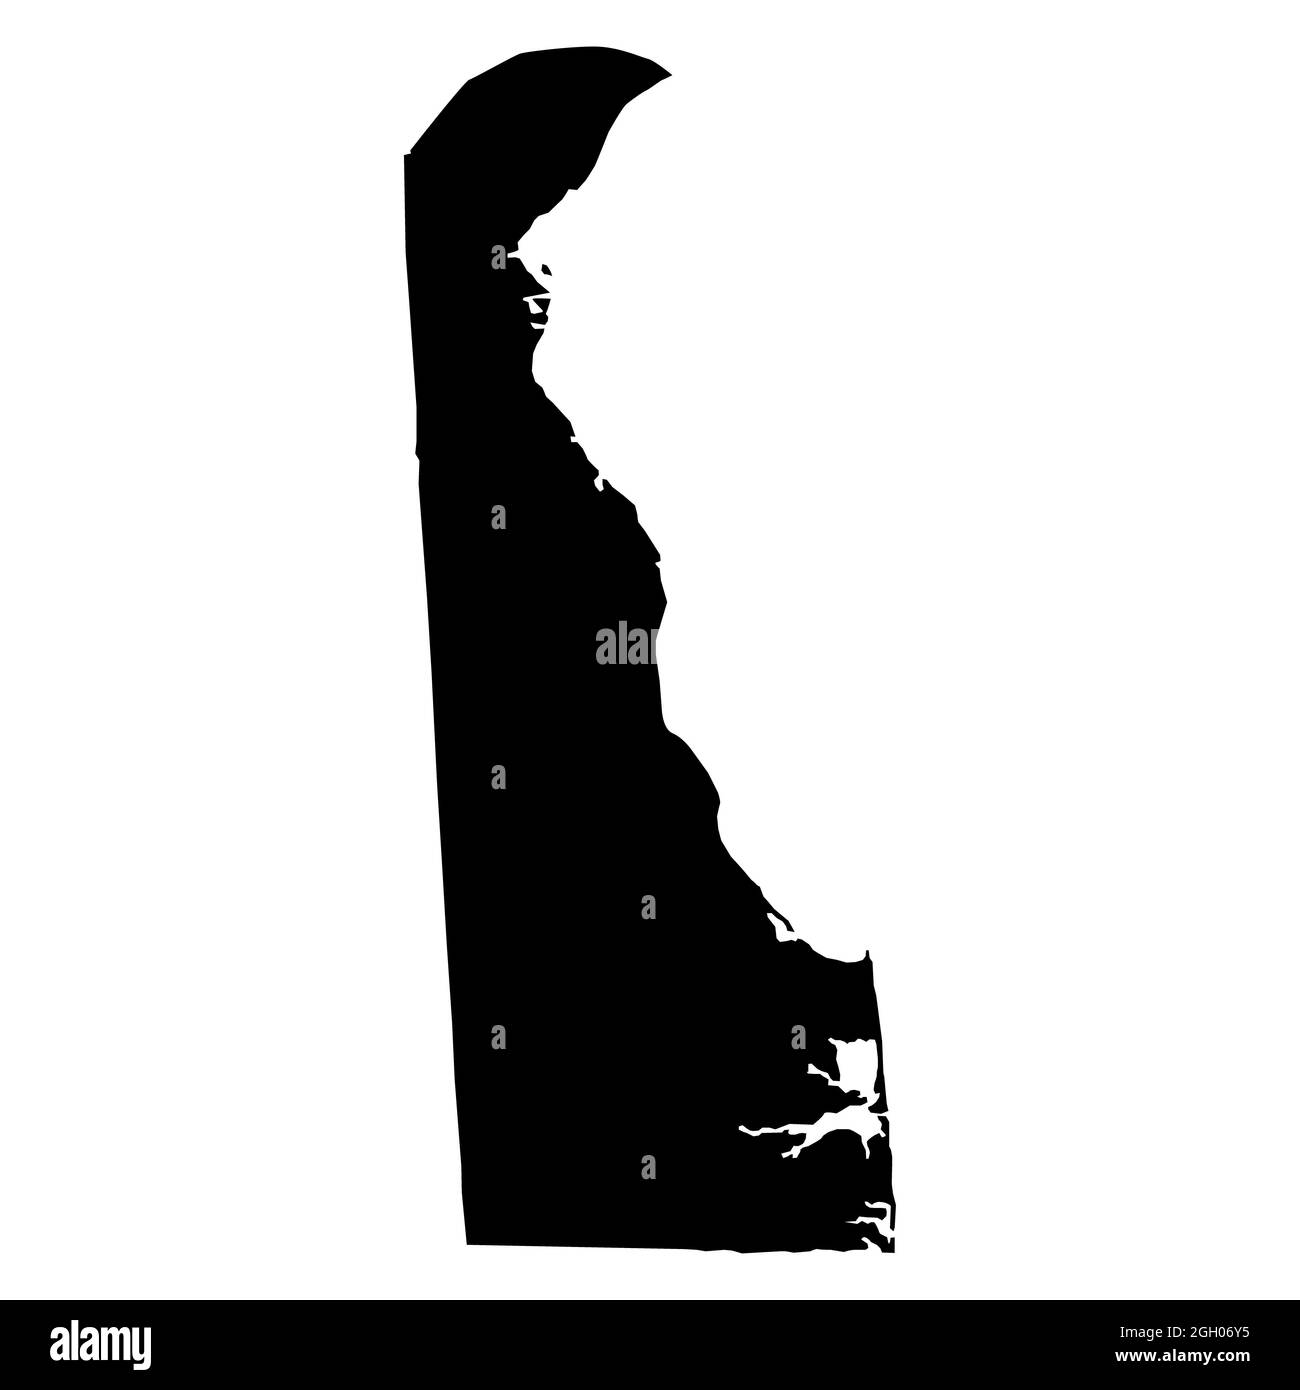 Schwarze Karte des Staates delaware auf weißem Hintergrund. Hohe detaillierte Vektorkarte des US-Bundesstaates Delaware. Flacher Stil. Stockfoto